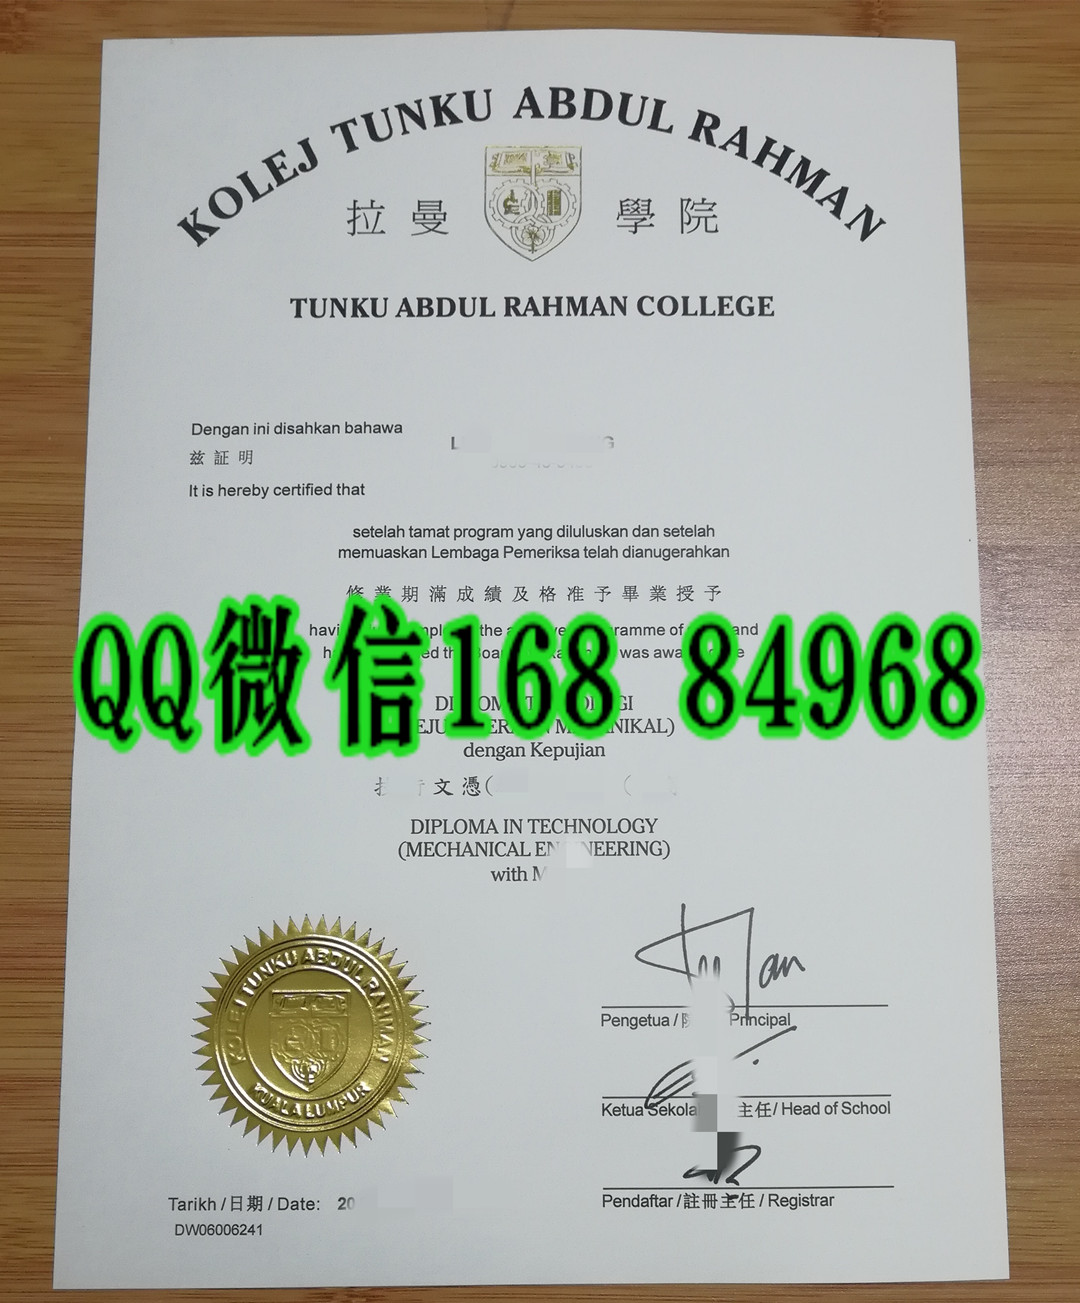 旧版本：马来西亚拉曼学院毕业证，tunku abdul rahman college diploma certificate